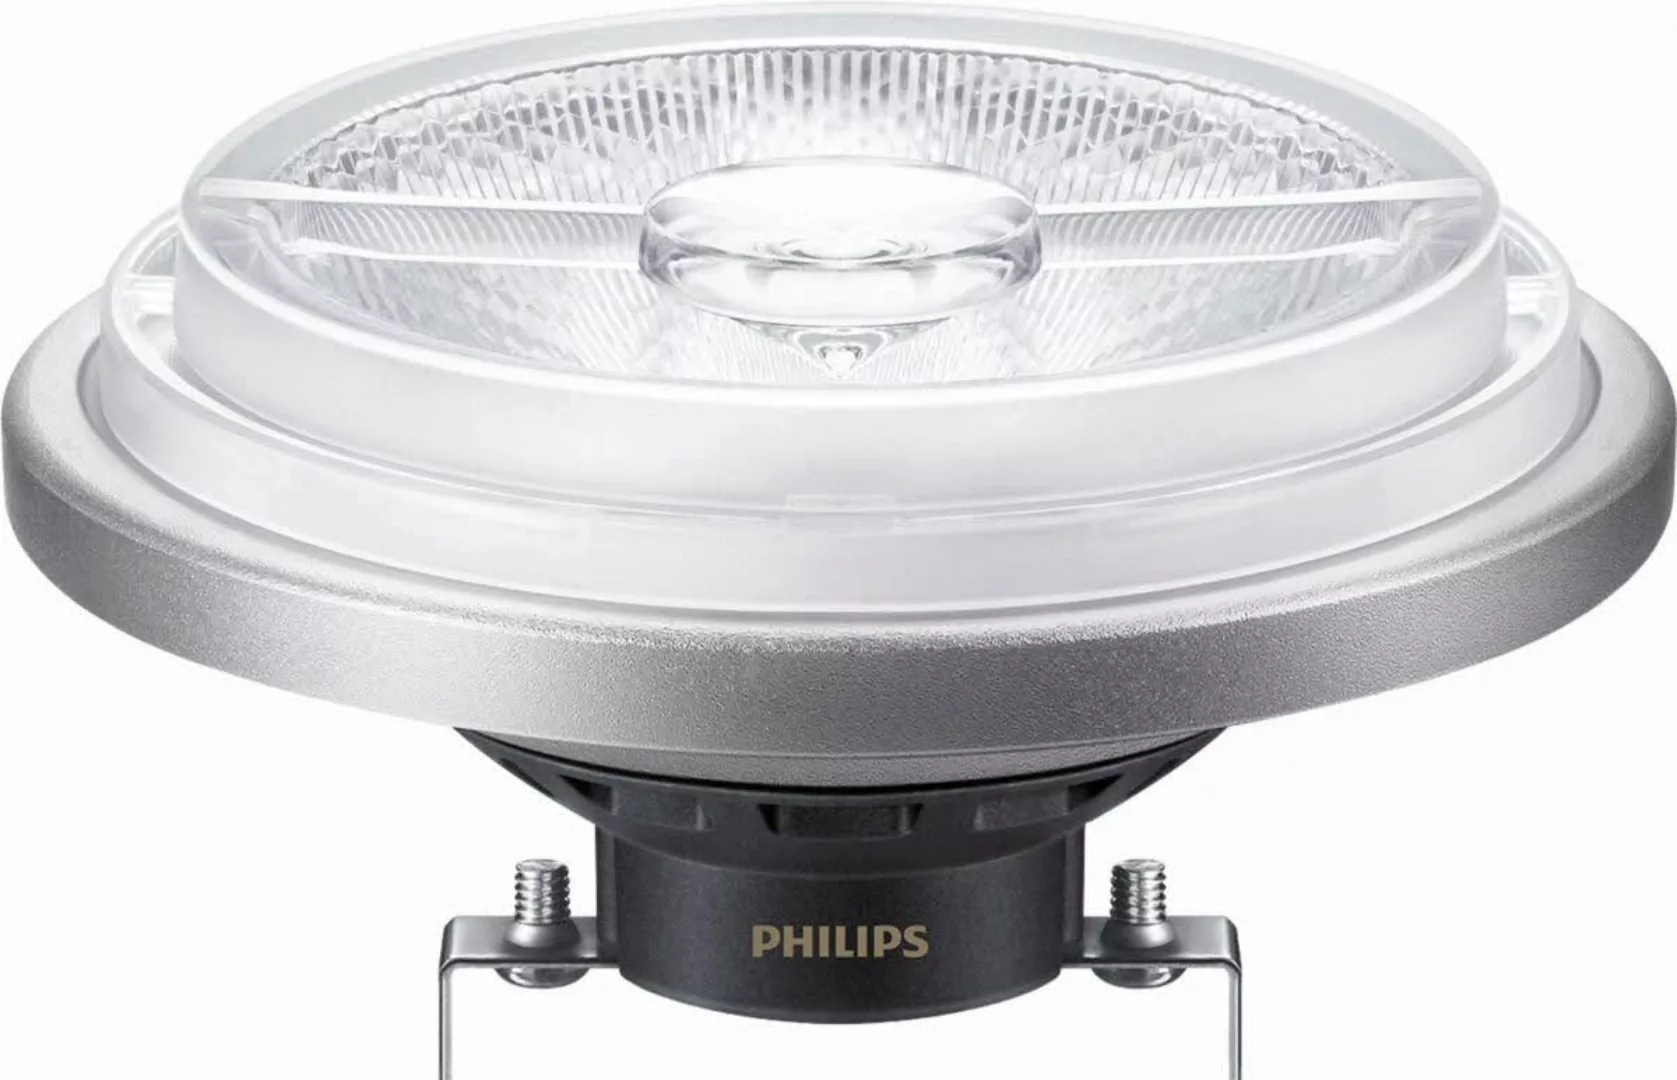 Philips Lighting LED-Reflektorlampe AR111 G53 930 DIM MAS Expert #33385700 günstig online kaufen